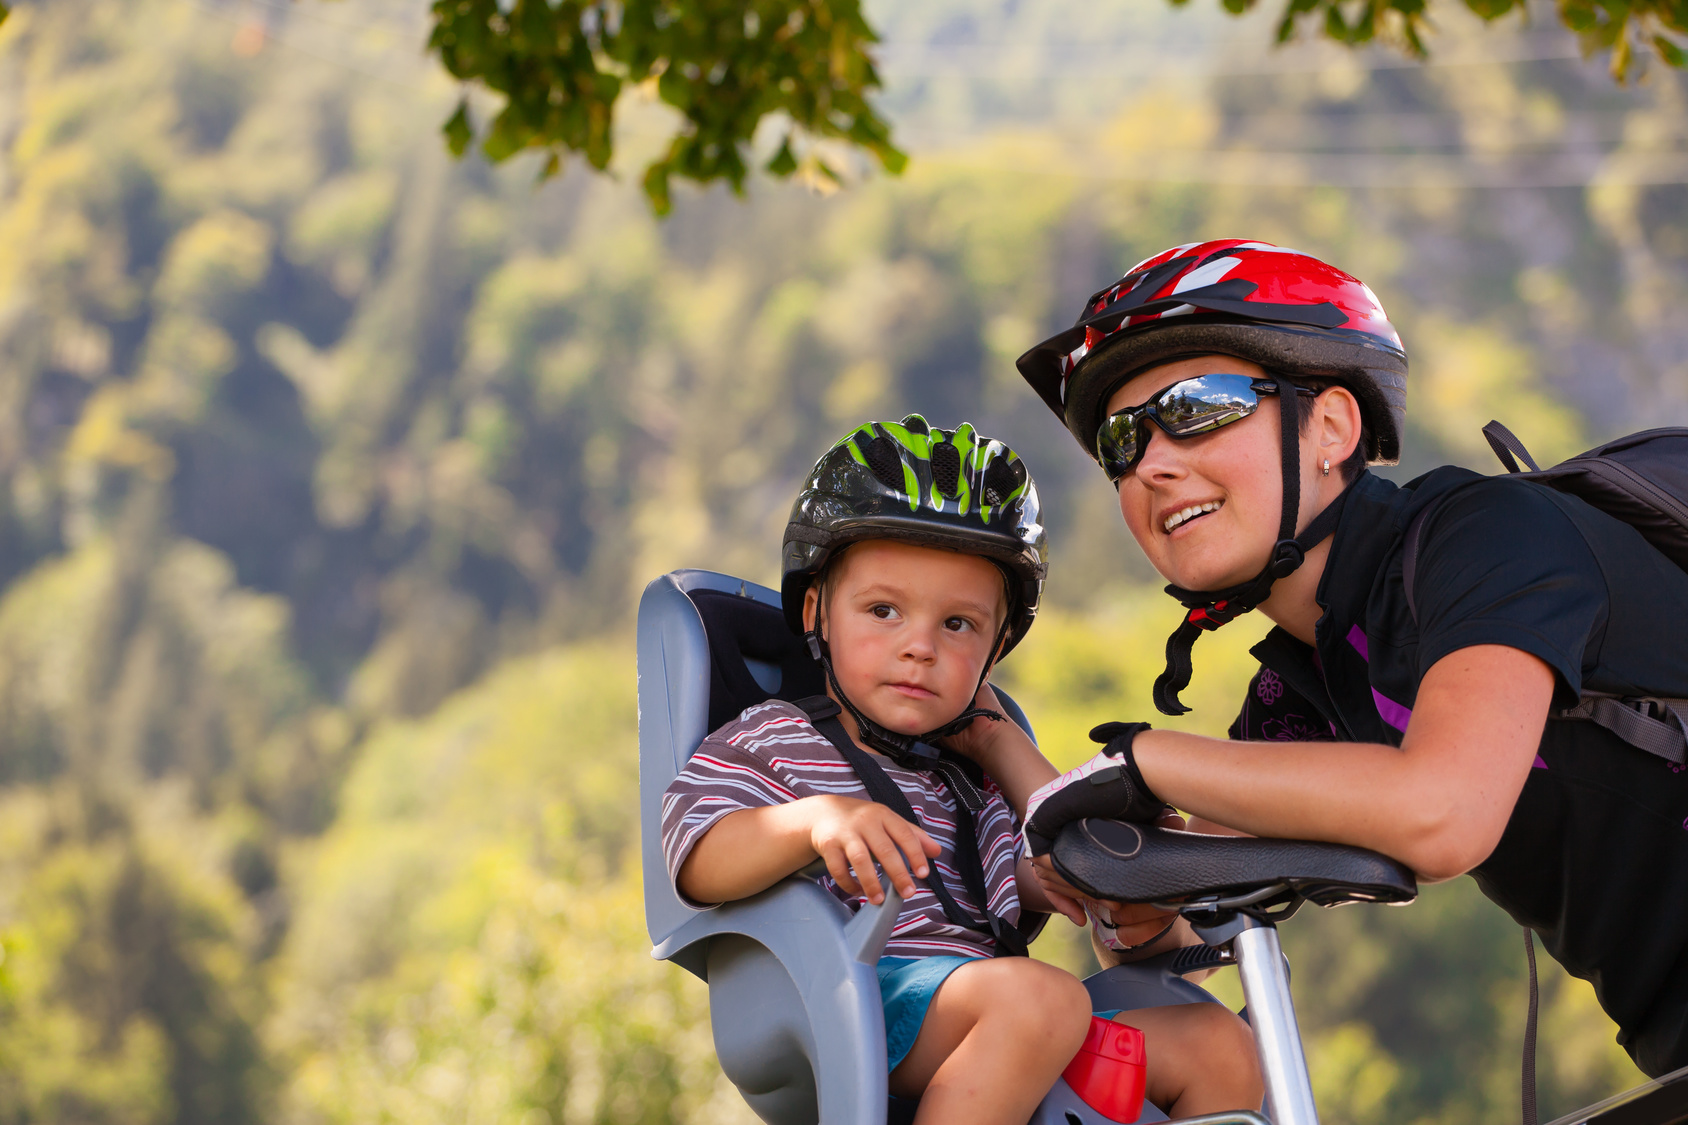 Promenades à vélo avec son bébé | PARENTS.fr